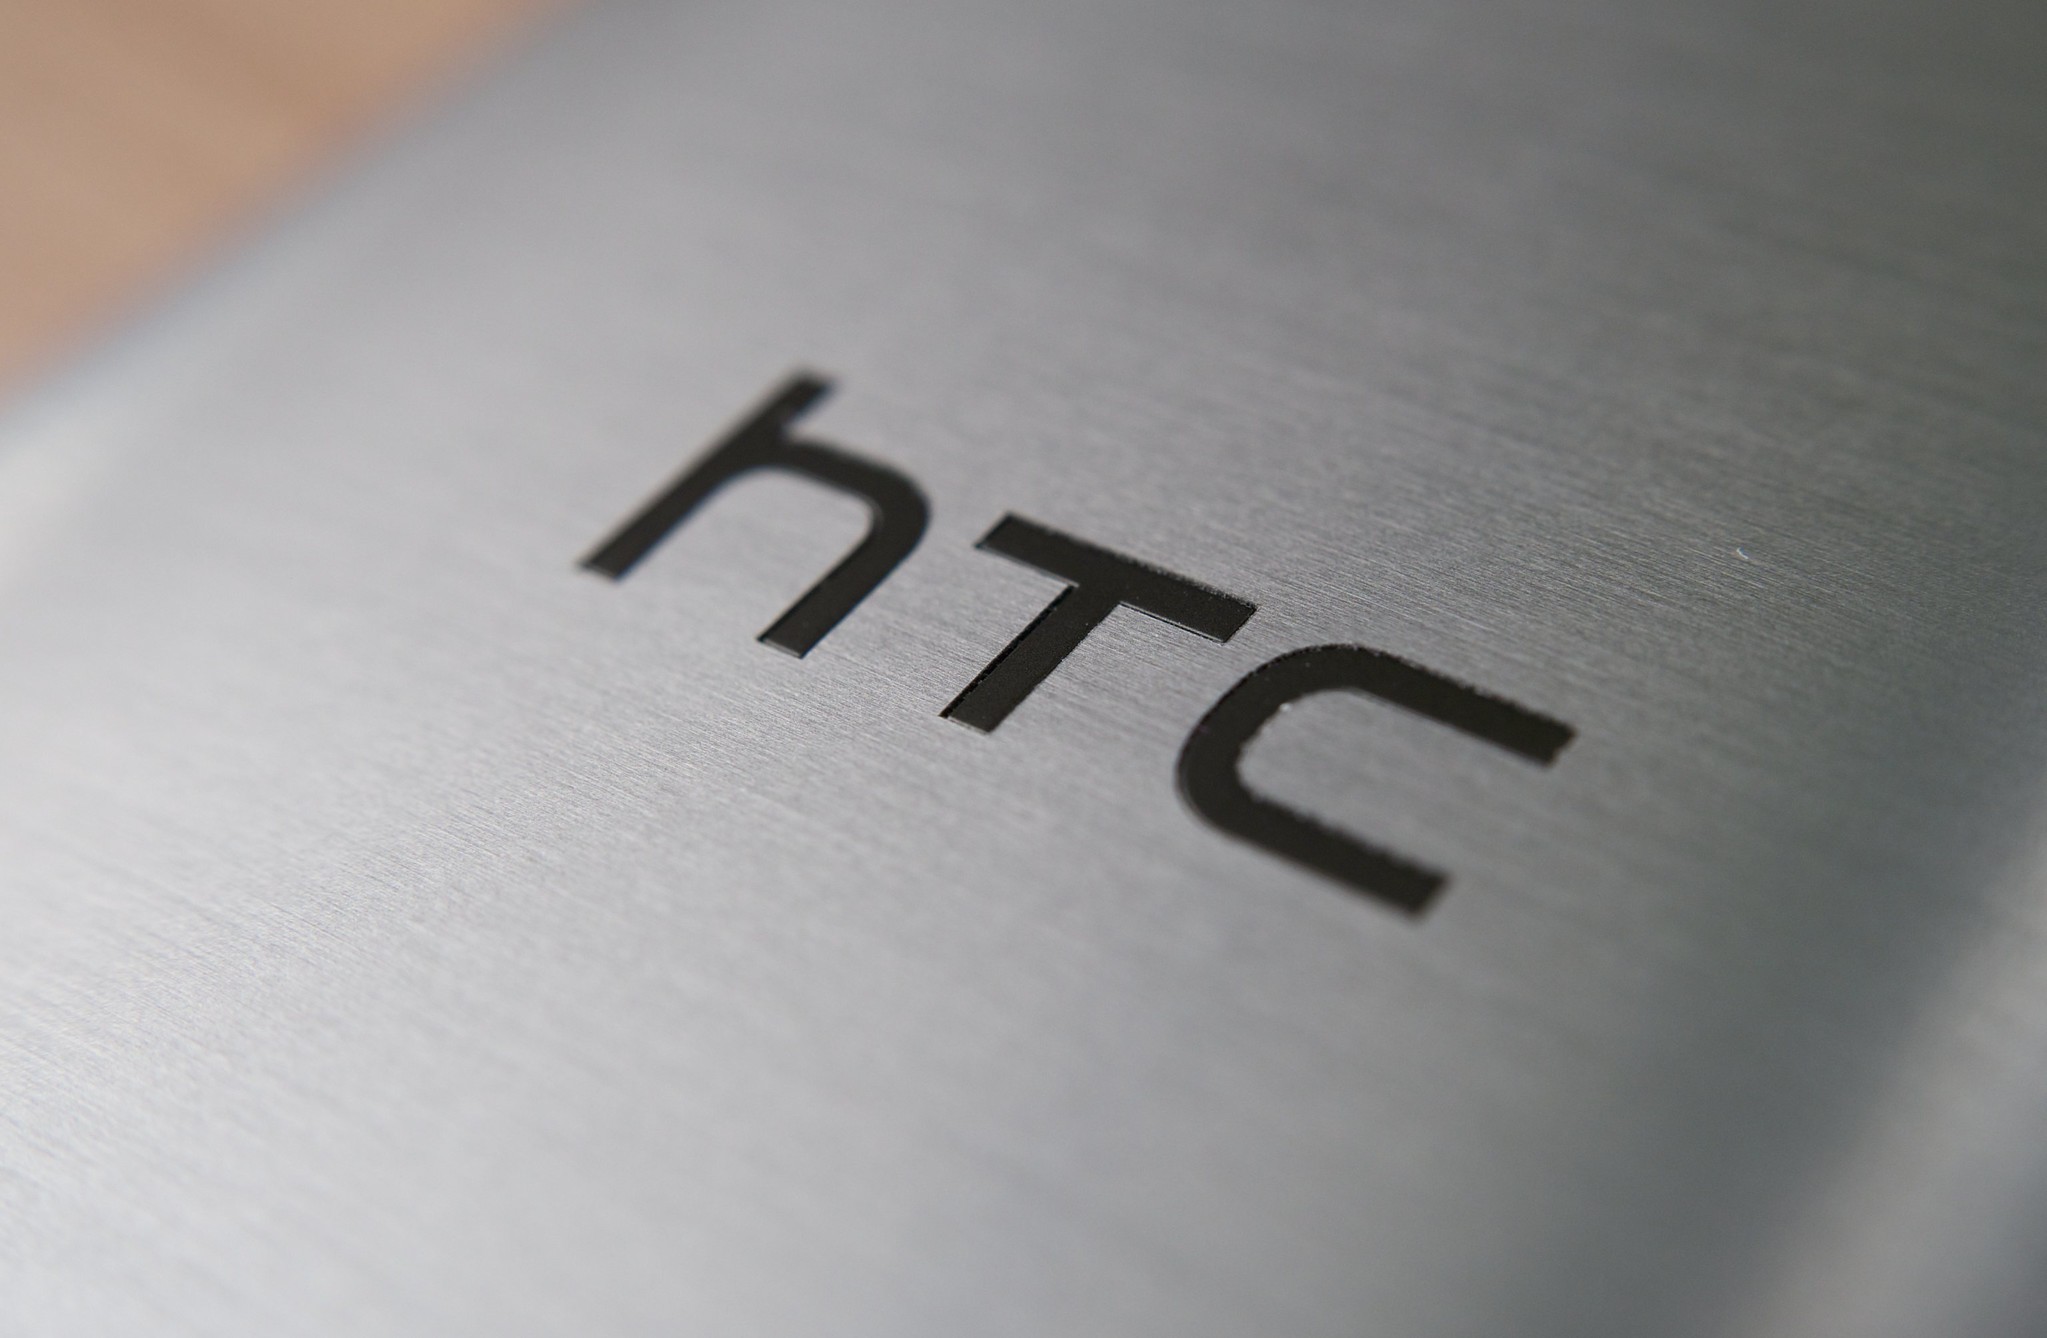 Kajian semula telefon pintar HTC Wildfire R70 dengan ciri utama